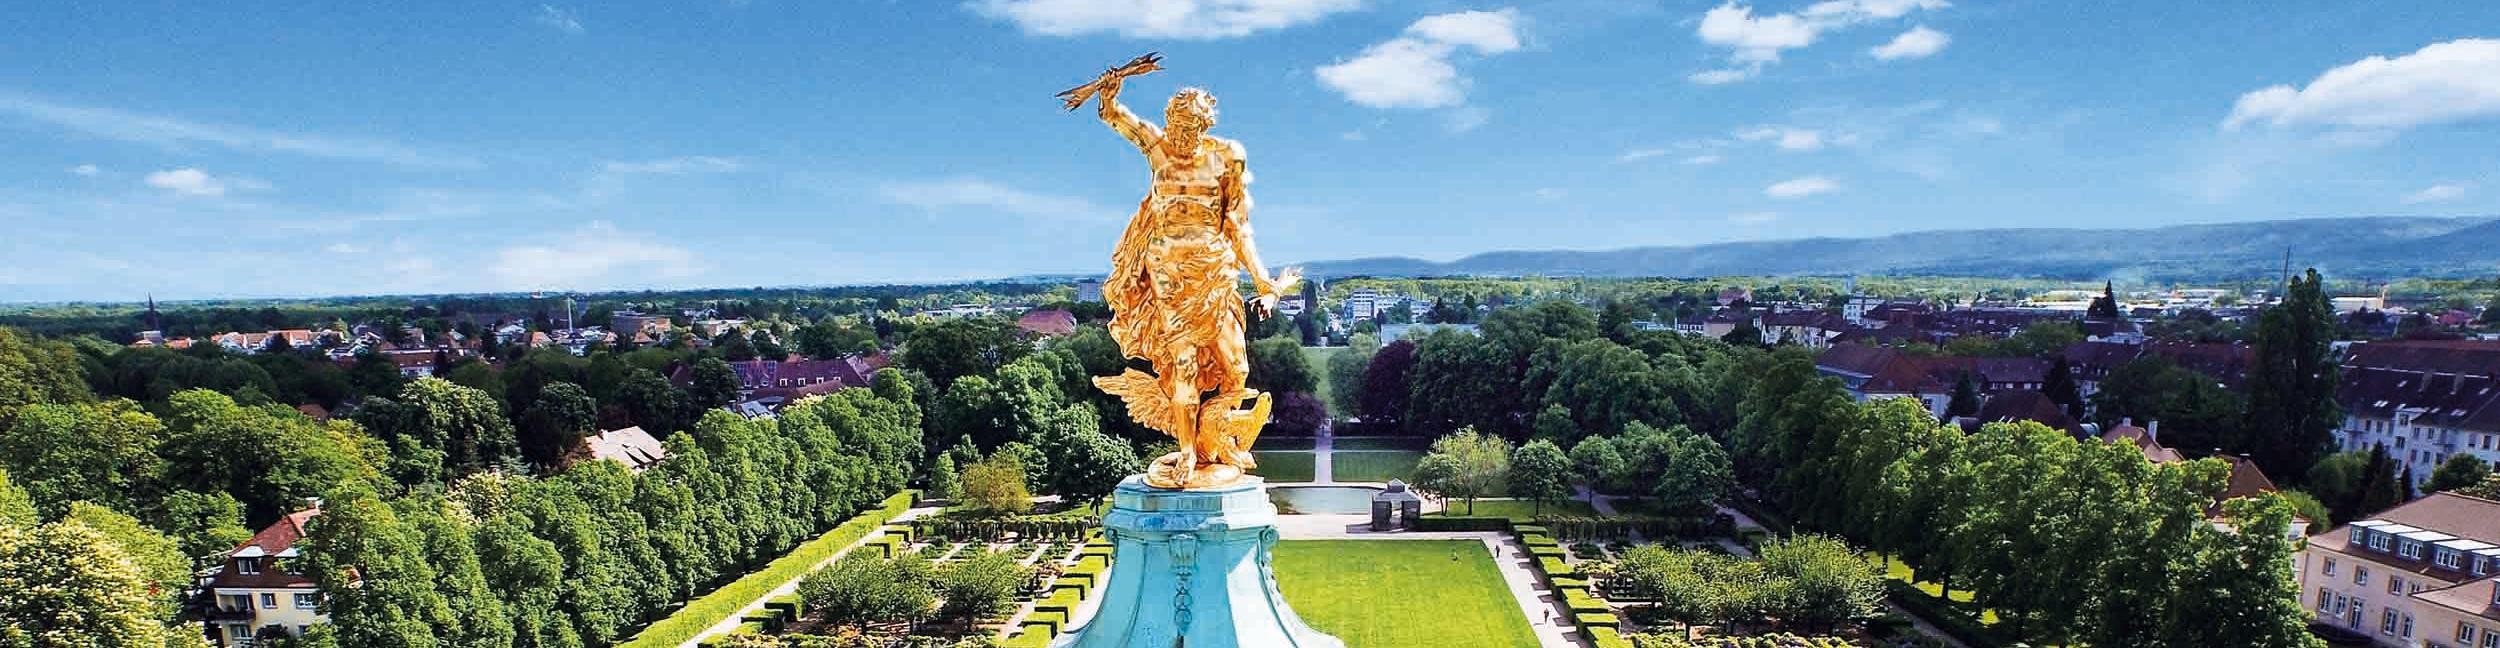 Goldener Mann Schloss Rastatt